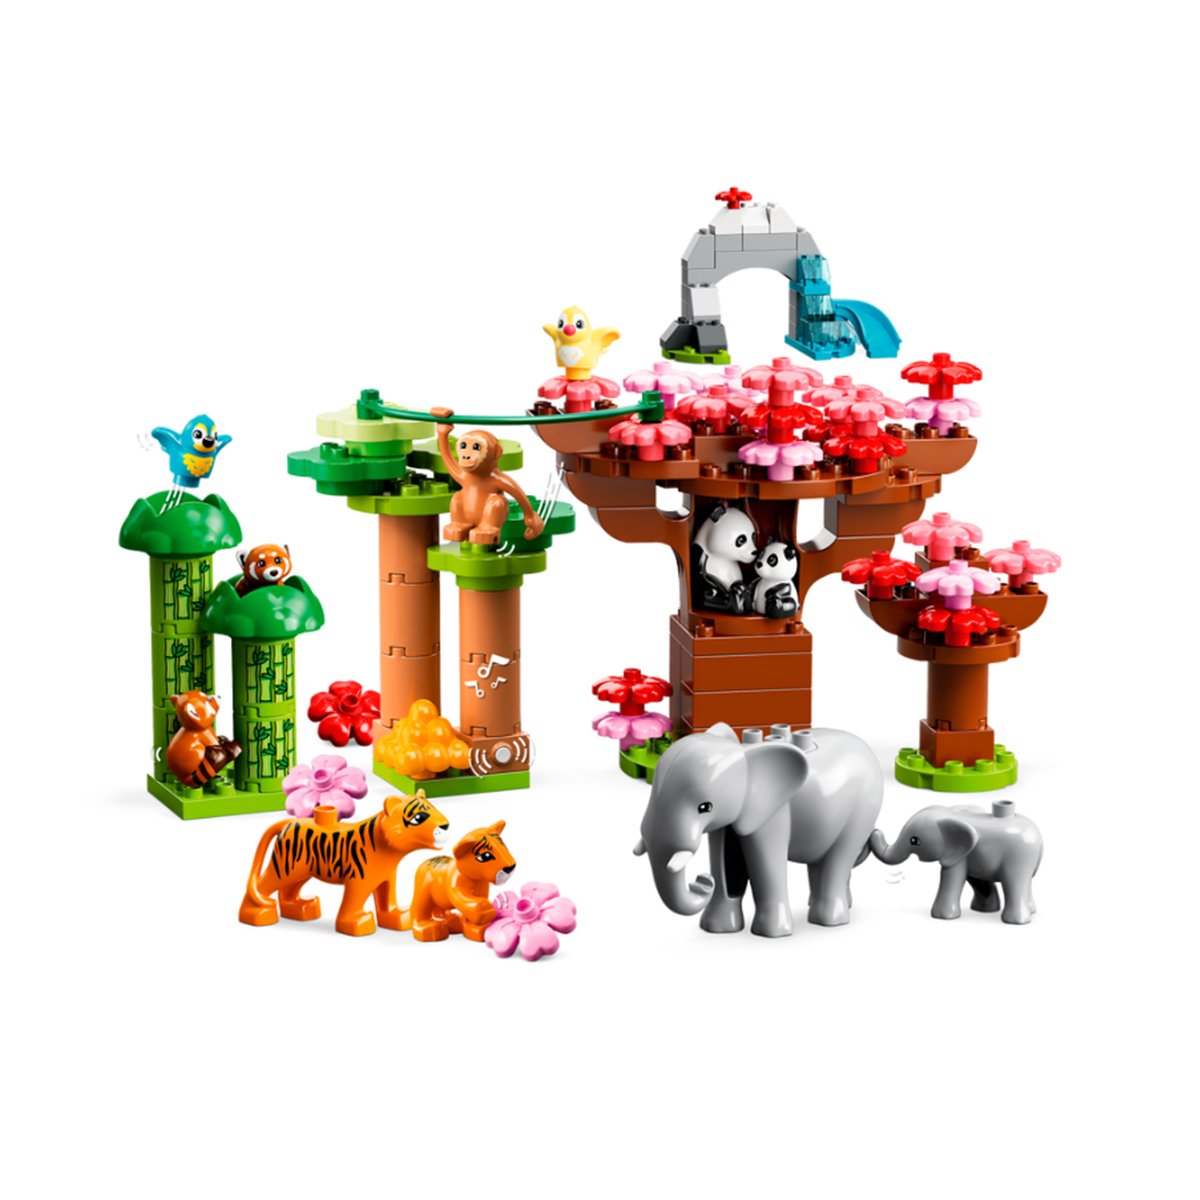 Lego Duplo - Vahşi Asya Hayvanları Oyun Seti 117 parça